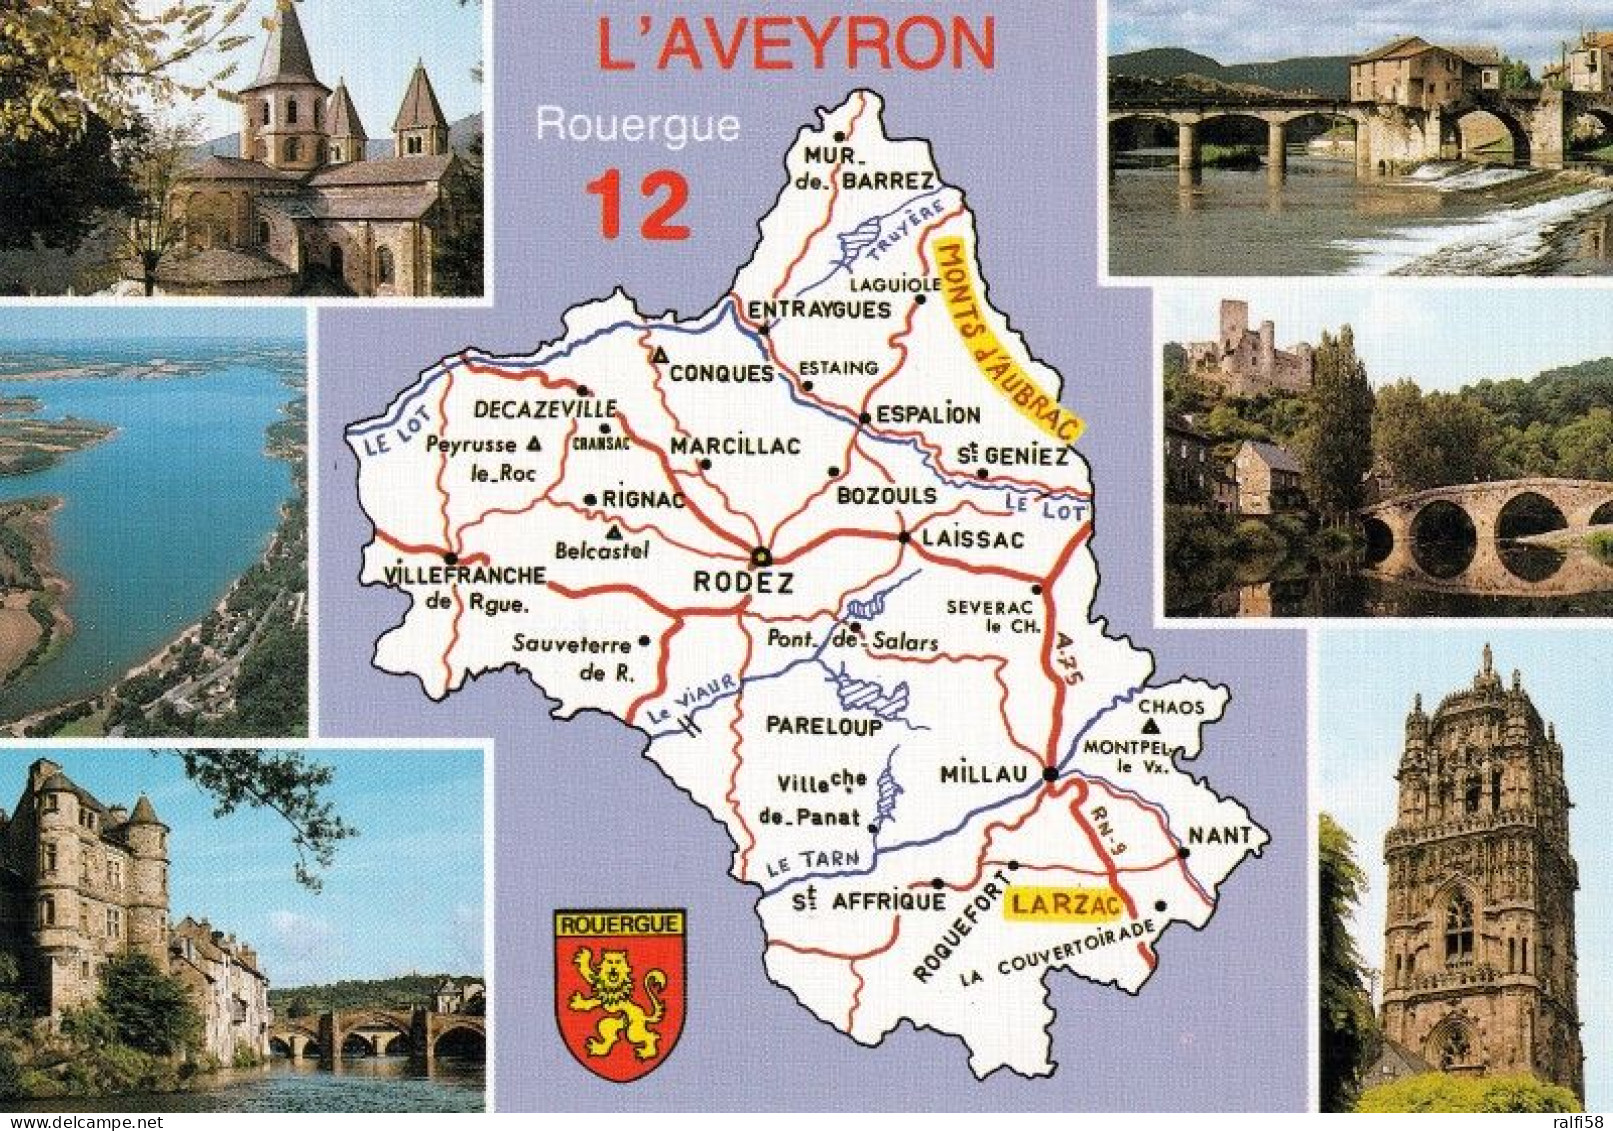 2 Map Of France * 2 Ansichtskarten Mit Der Landkarte - Département Aveyron Und Sehenswürdigkeiten - Ordnungsnummer 12 * - Landkarten